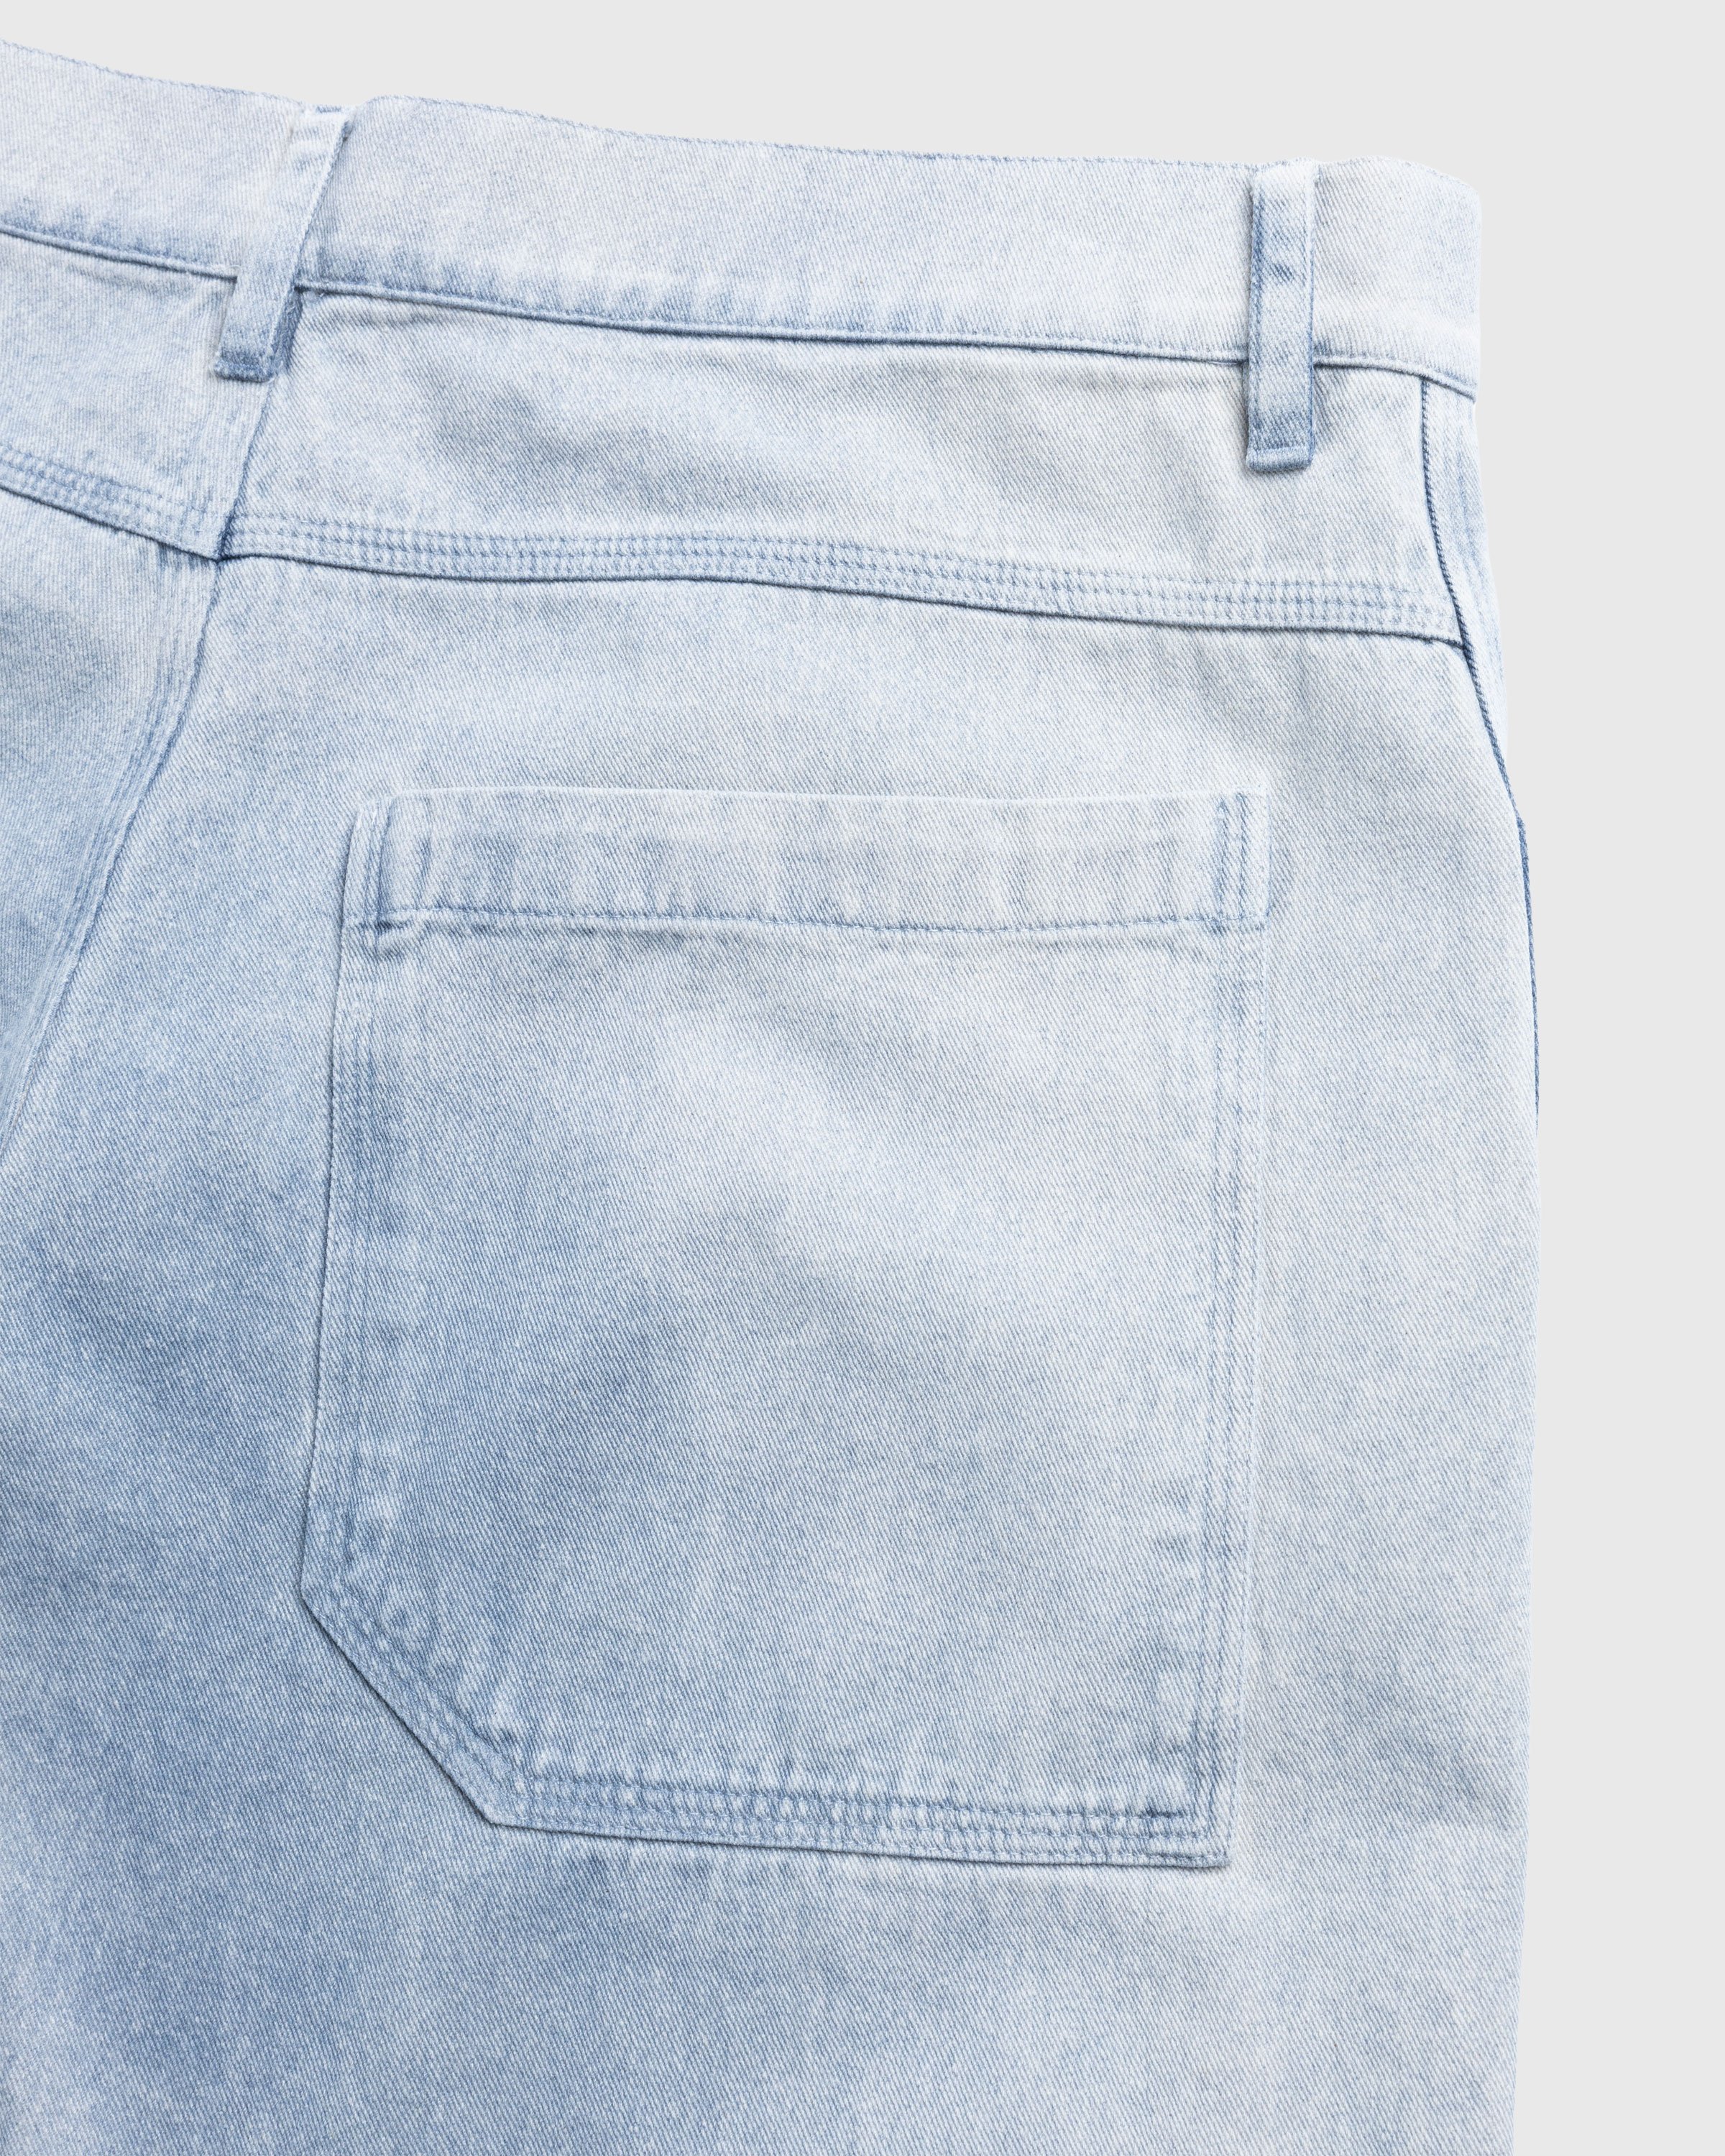 RANRA - Mokollur Jeans Washed Indigo - Clothing - Blue - Image 6